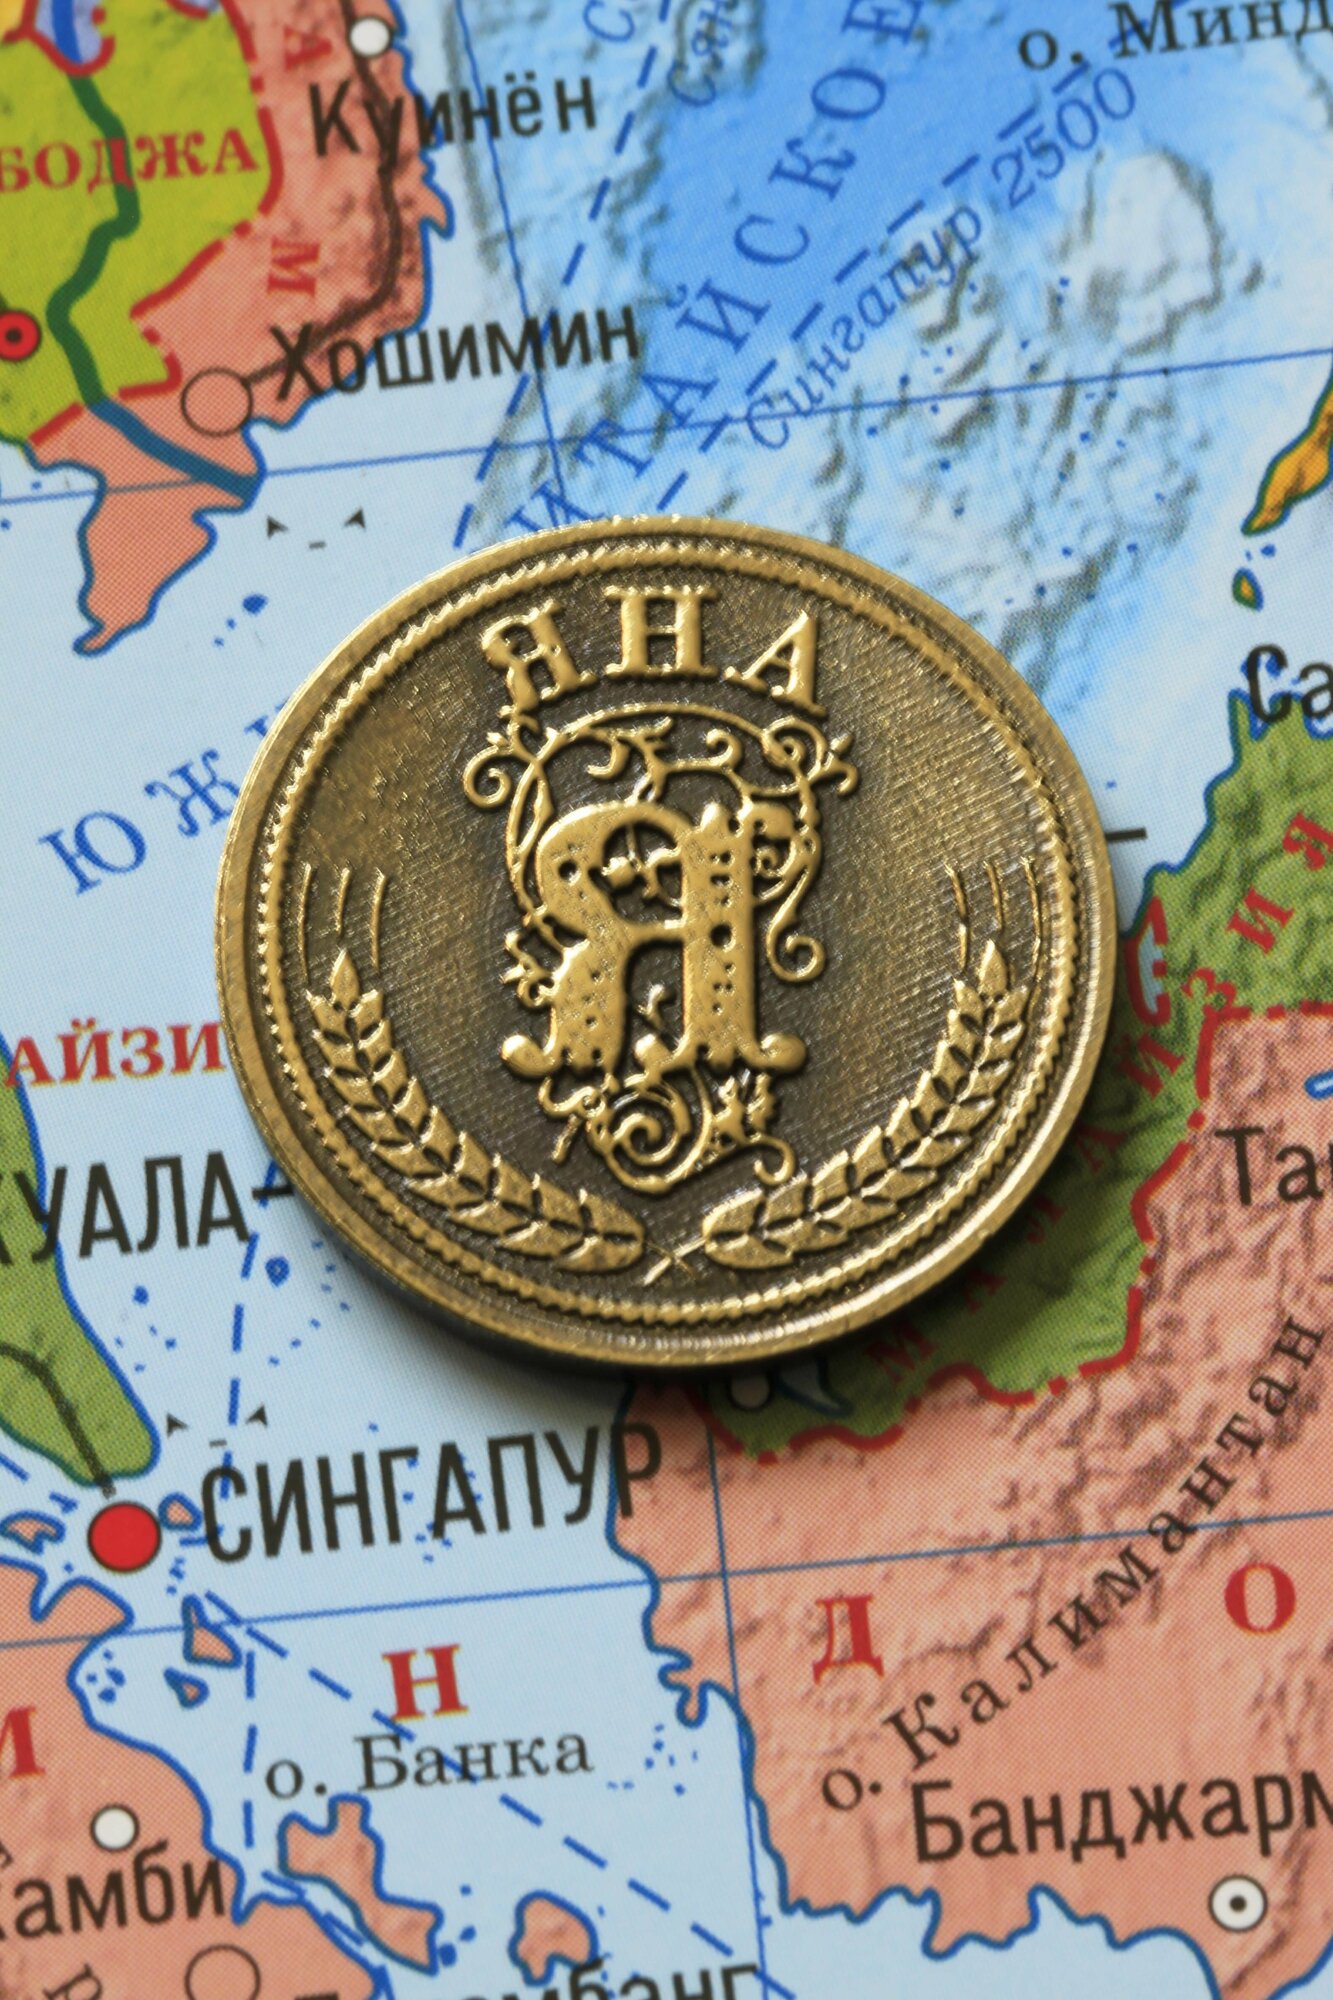 Именная оригинальна сувенирная монетка в подарок на богатство и удачу для женщины, девушки и девочки - Яна